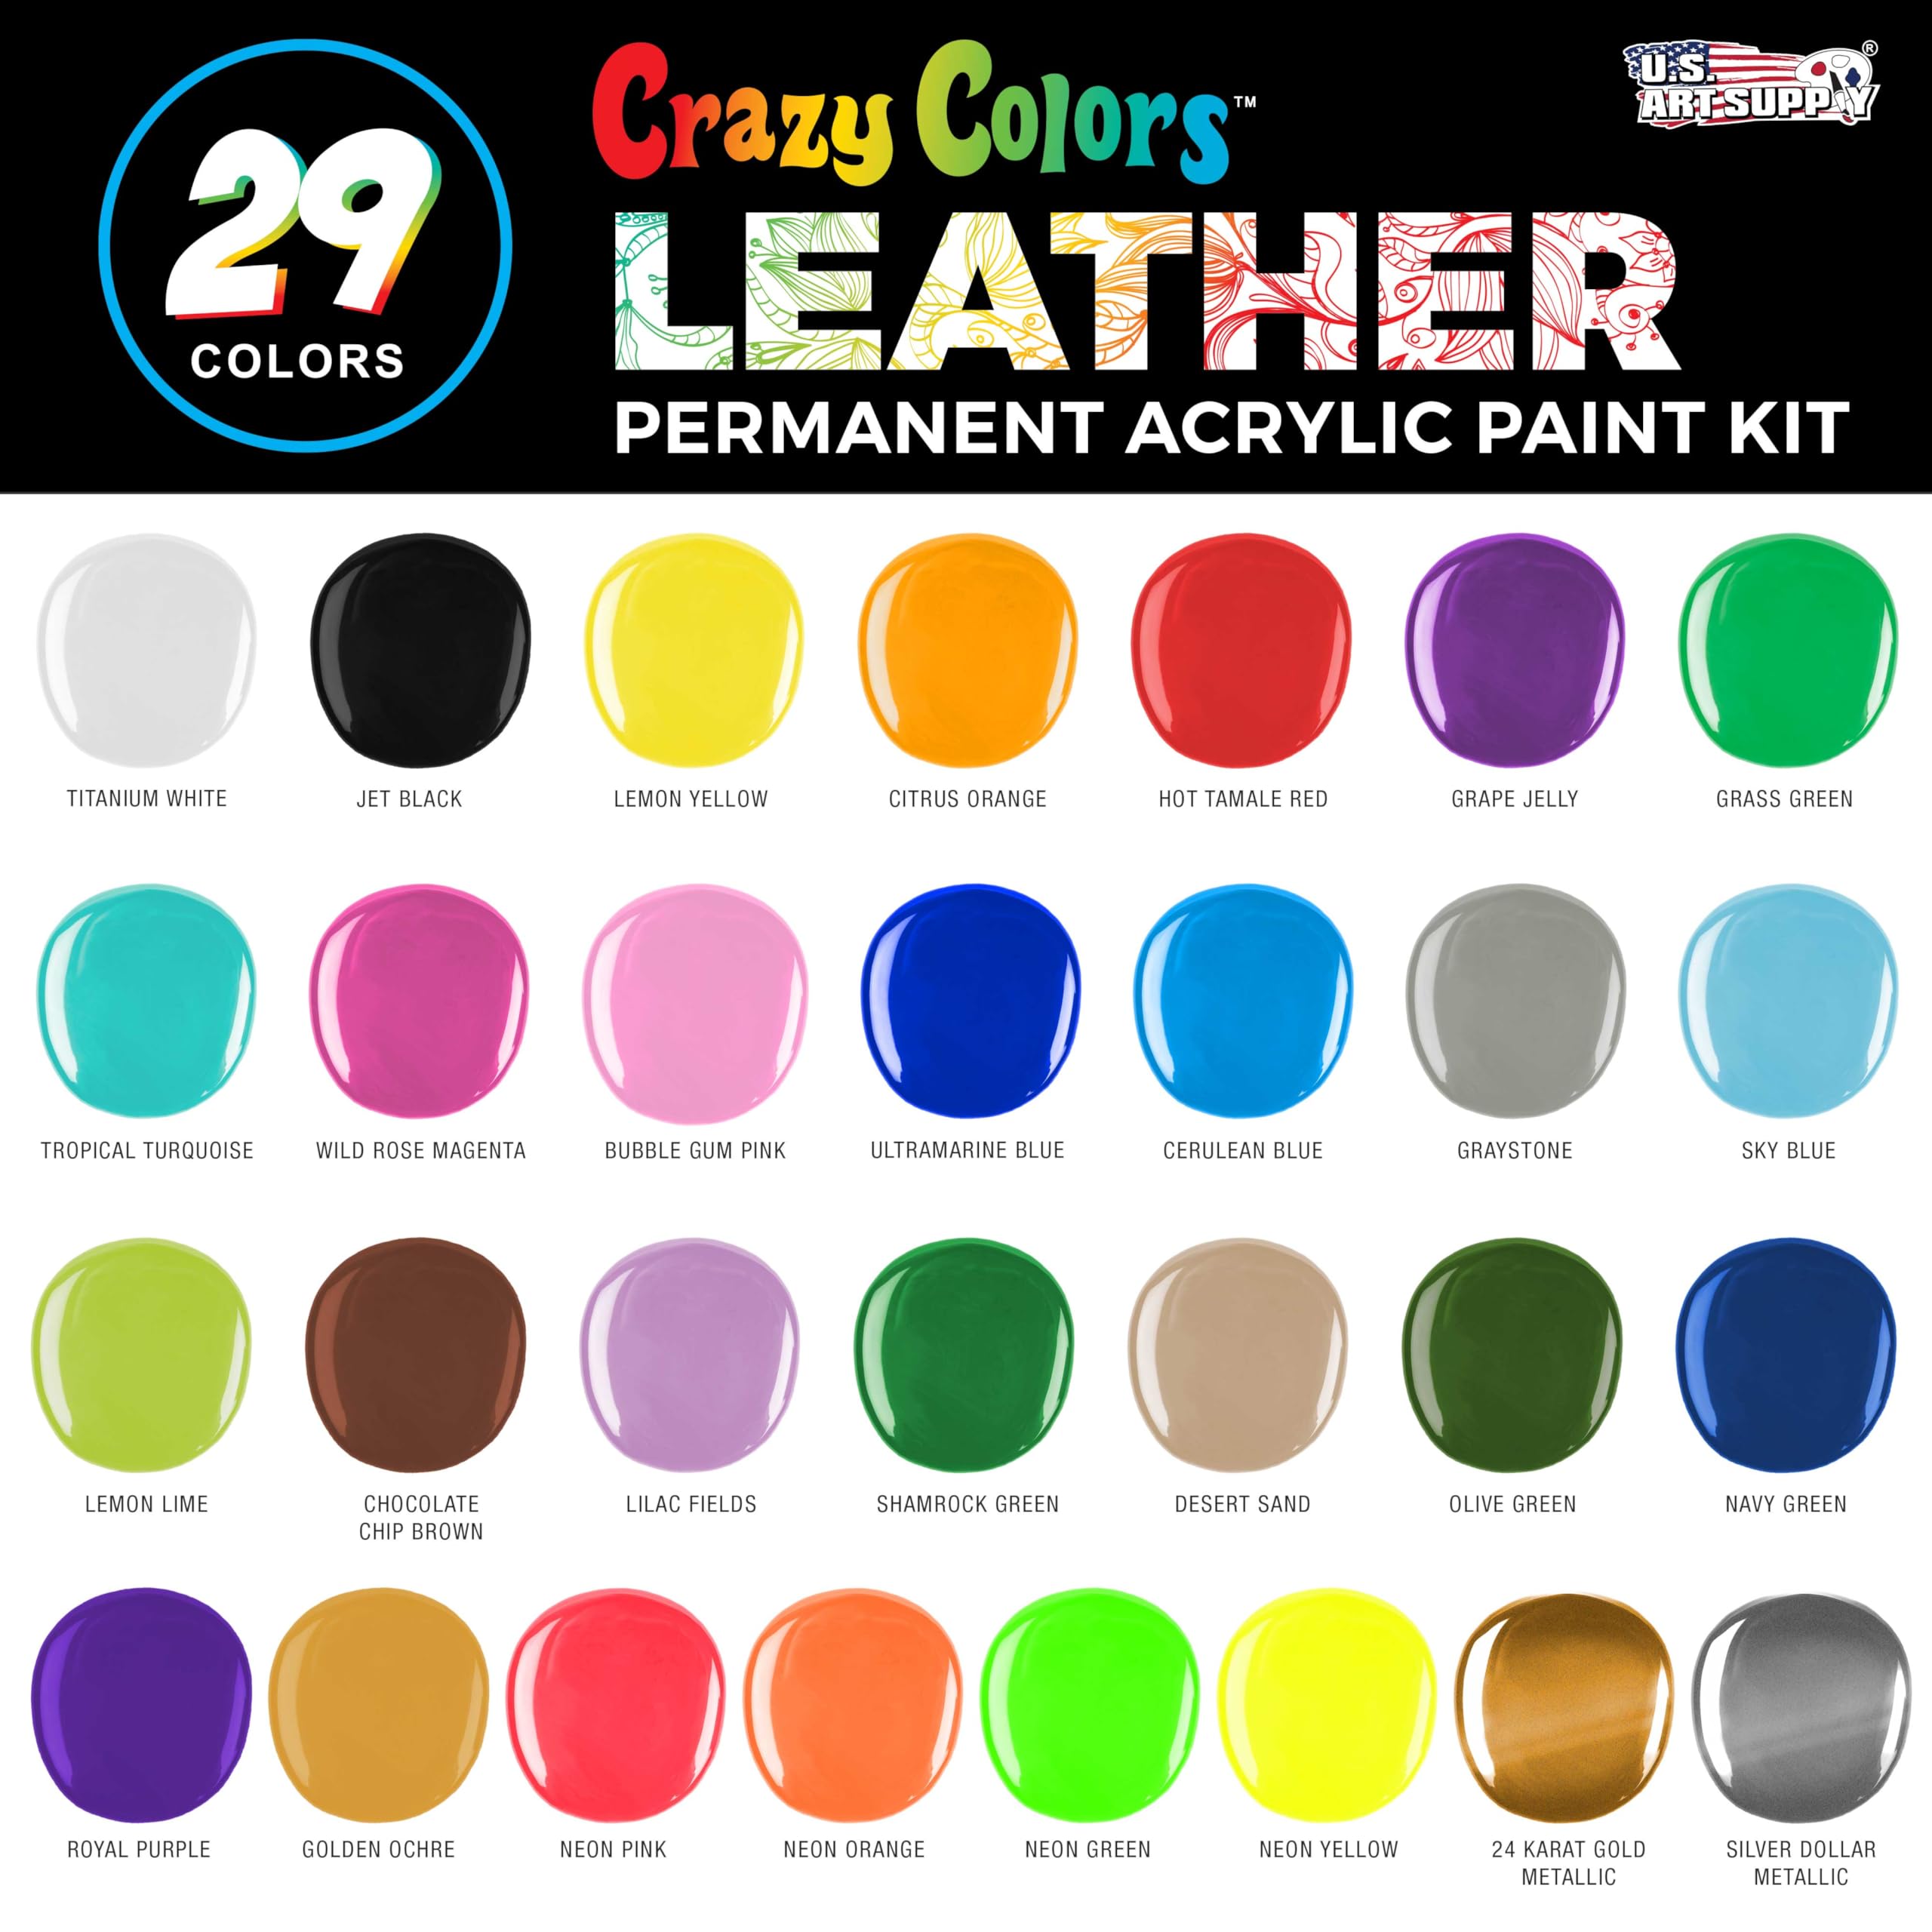 Crazy Colors Premium Acrylic Leather and Shoe Paint Kit, 29 Colors, Deglazer, 4-Piece Brush Set - 1 oz Bottles, Opaque, Metallic, Neon - Flexible, Scratch Resistant - Sneakers, Jackets, Bags Purses